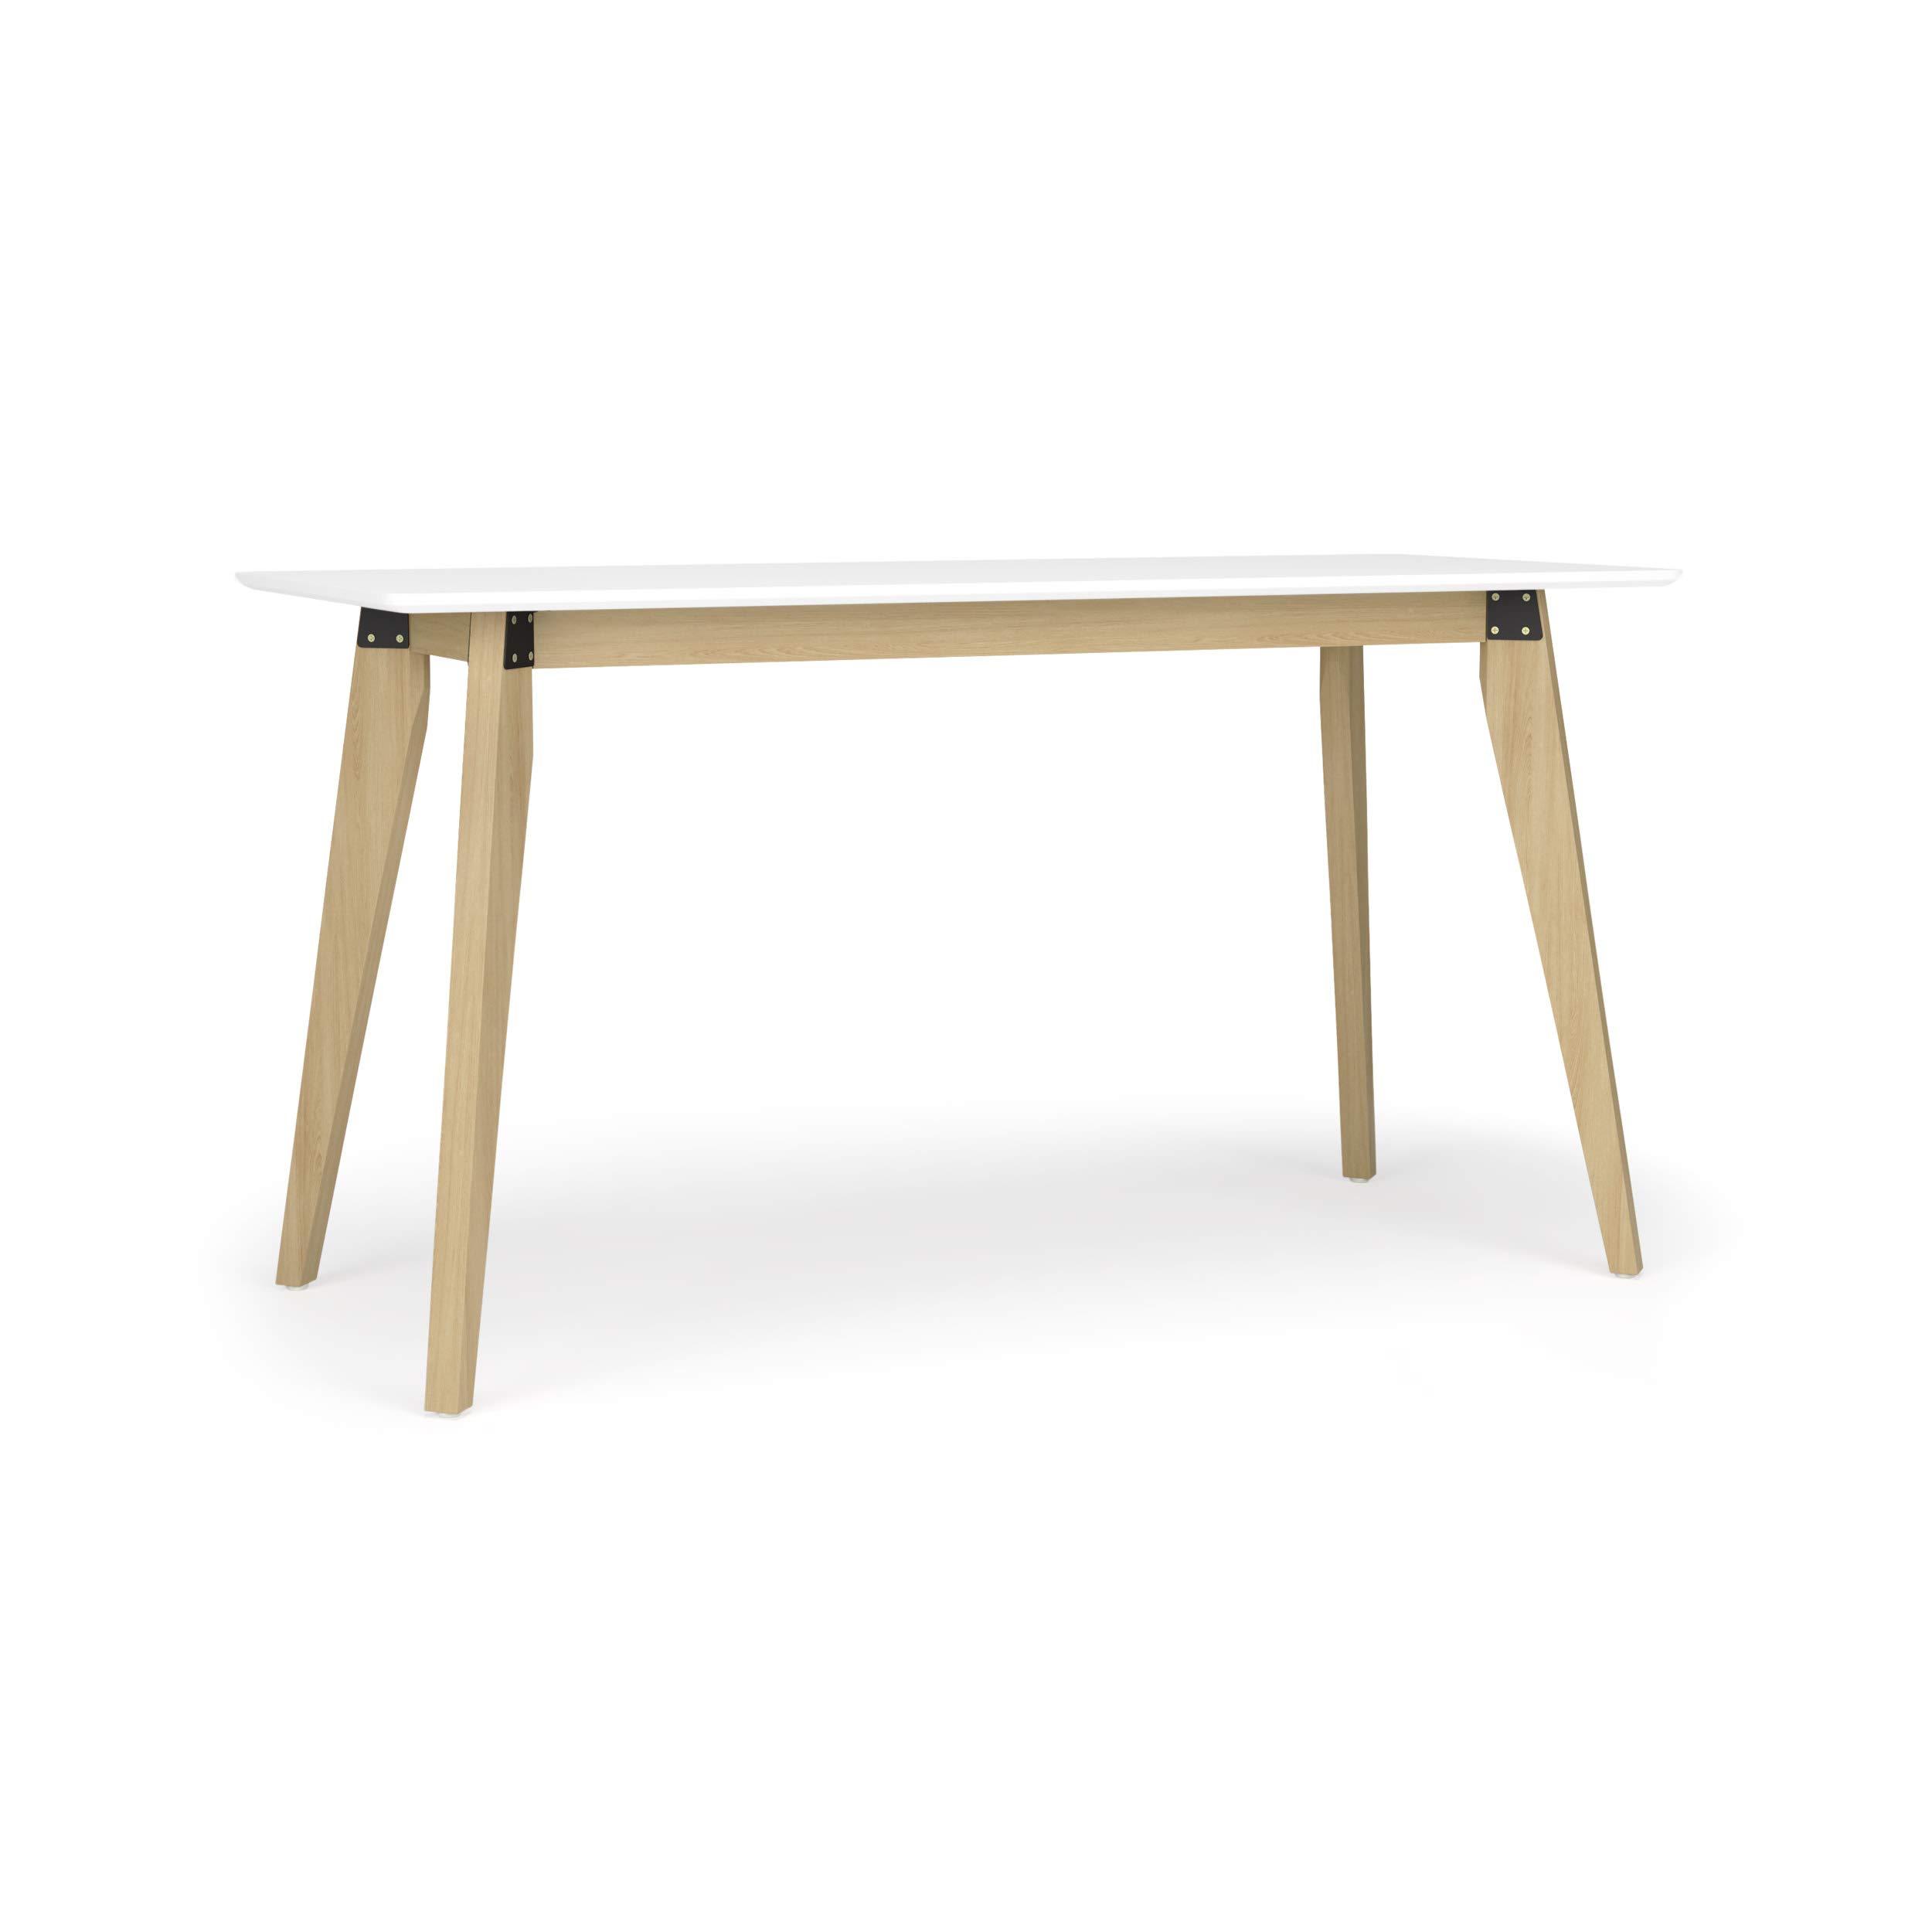 55" Hon Basyx Modern Wooden Desk w/ White PVC Wrapped Top $78.42 + Free Shipping